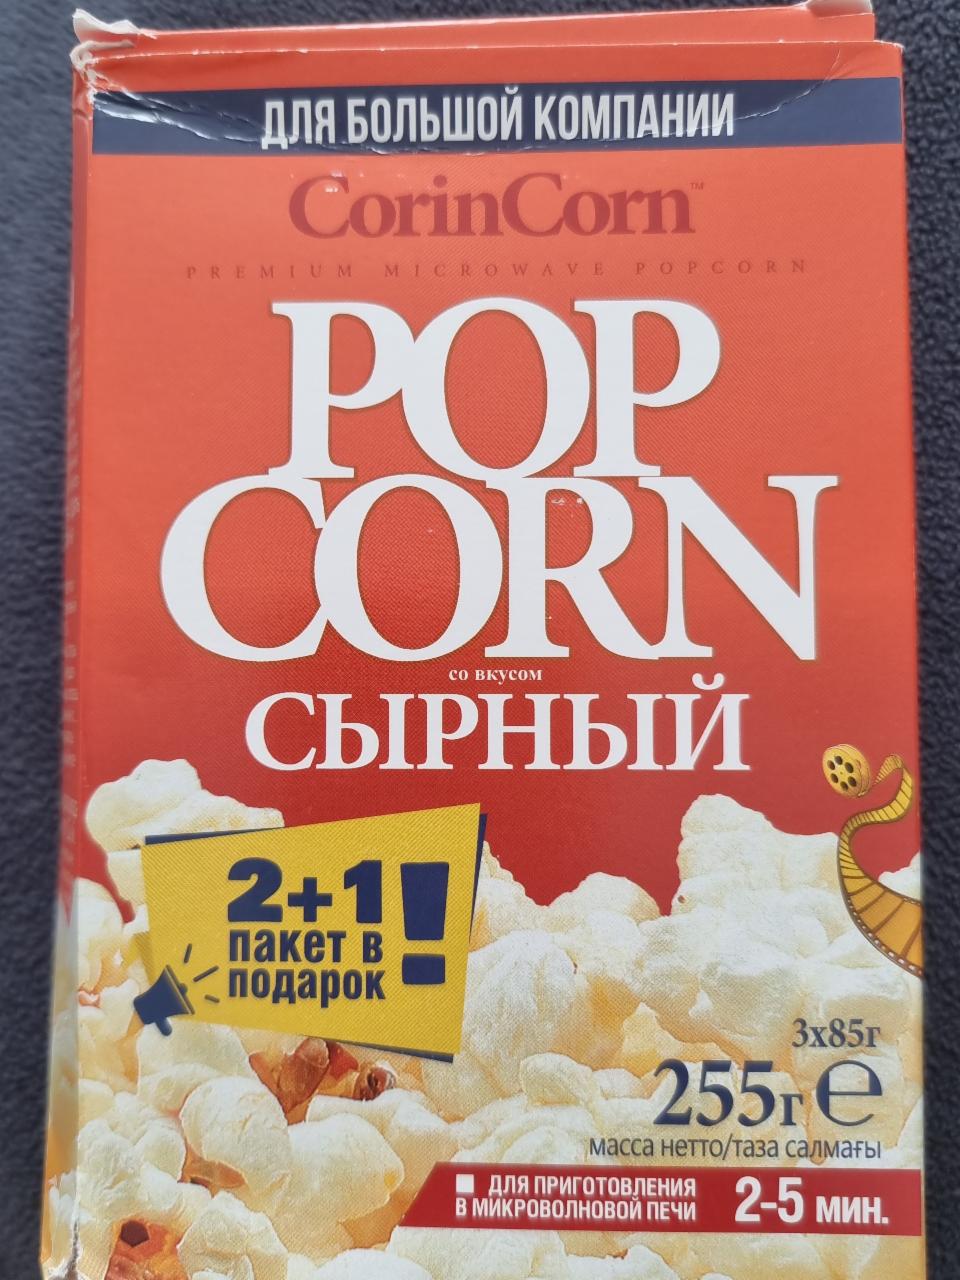 Фото - Попкорн Pop Corn Сырный CorinCorn